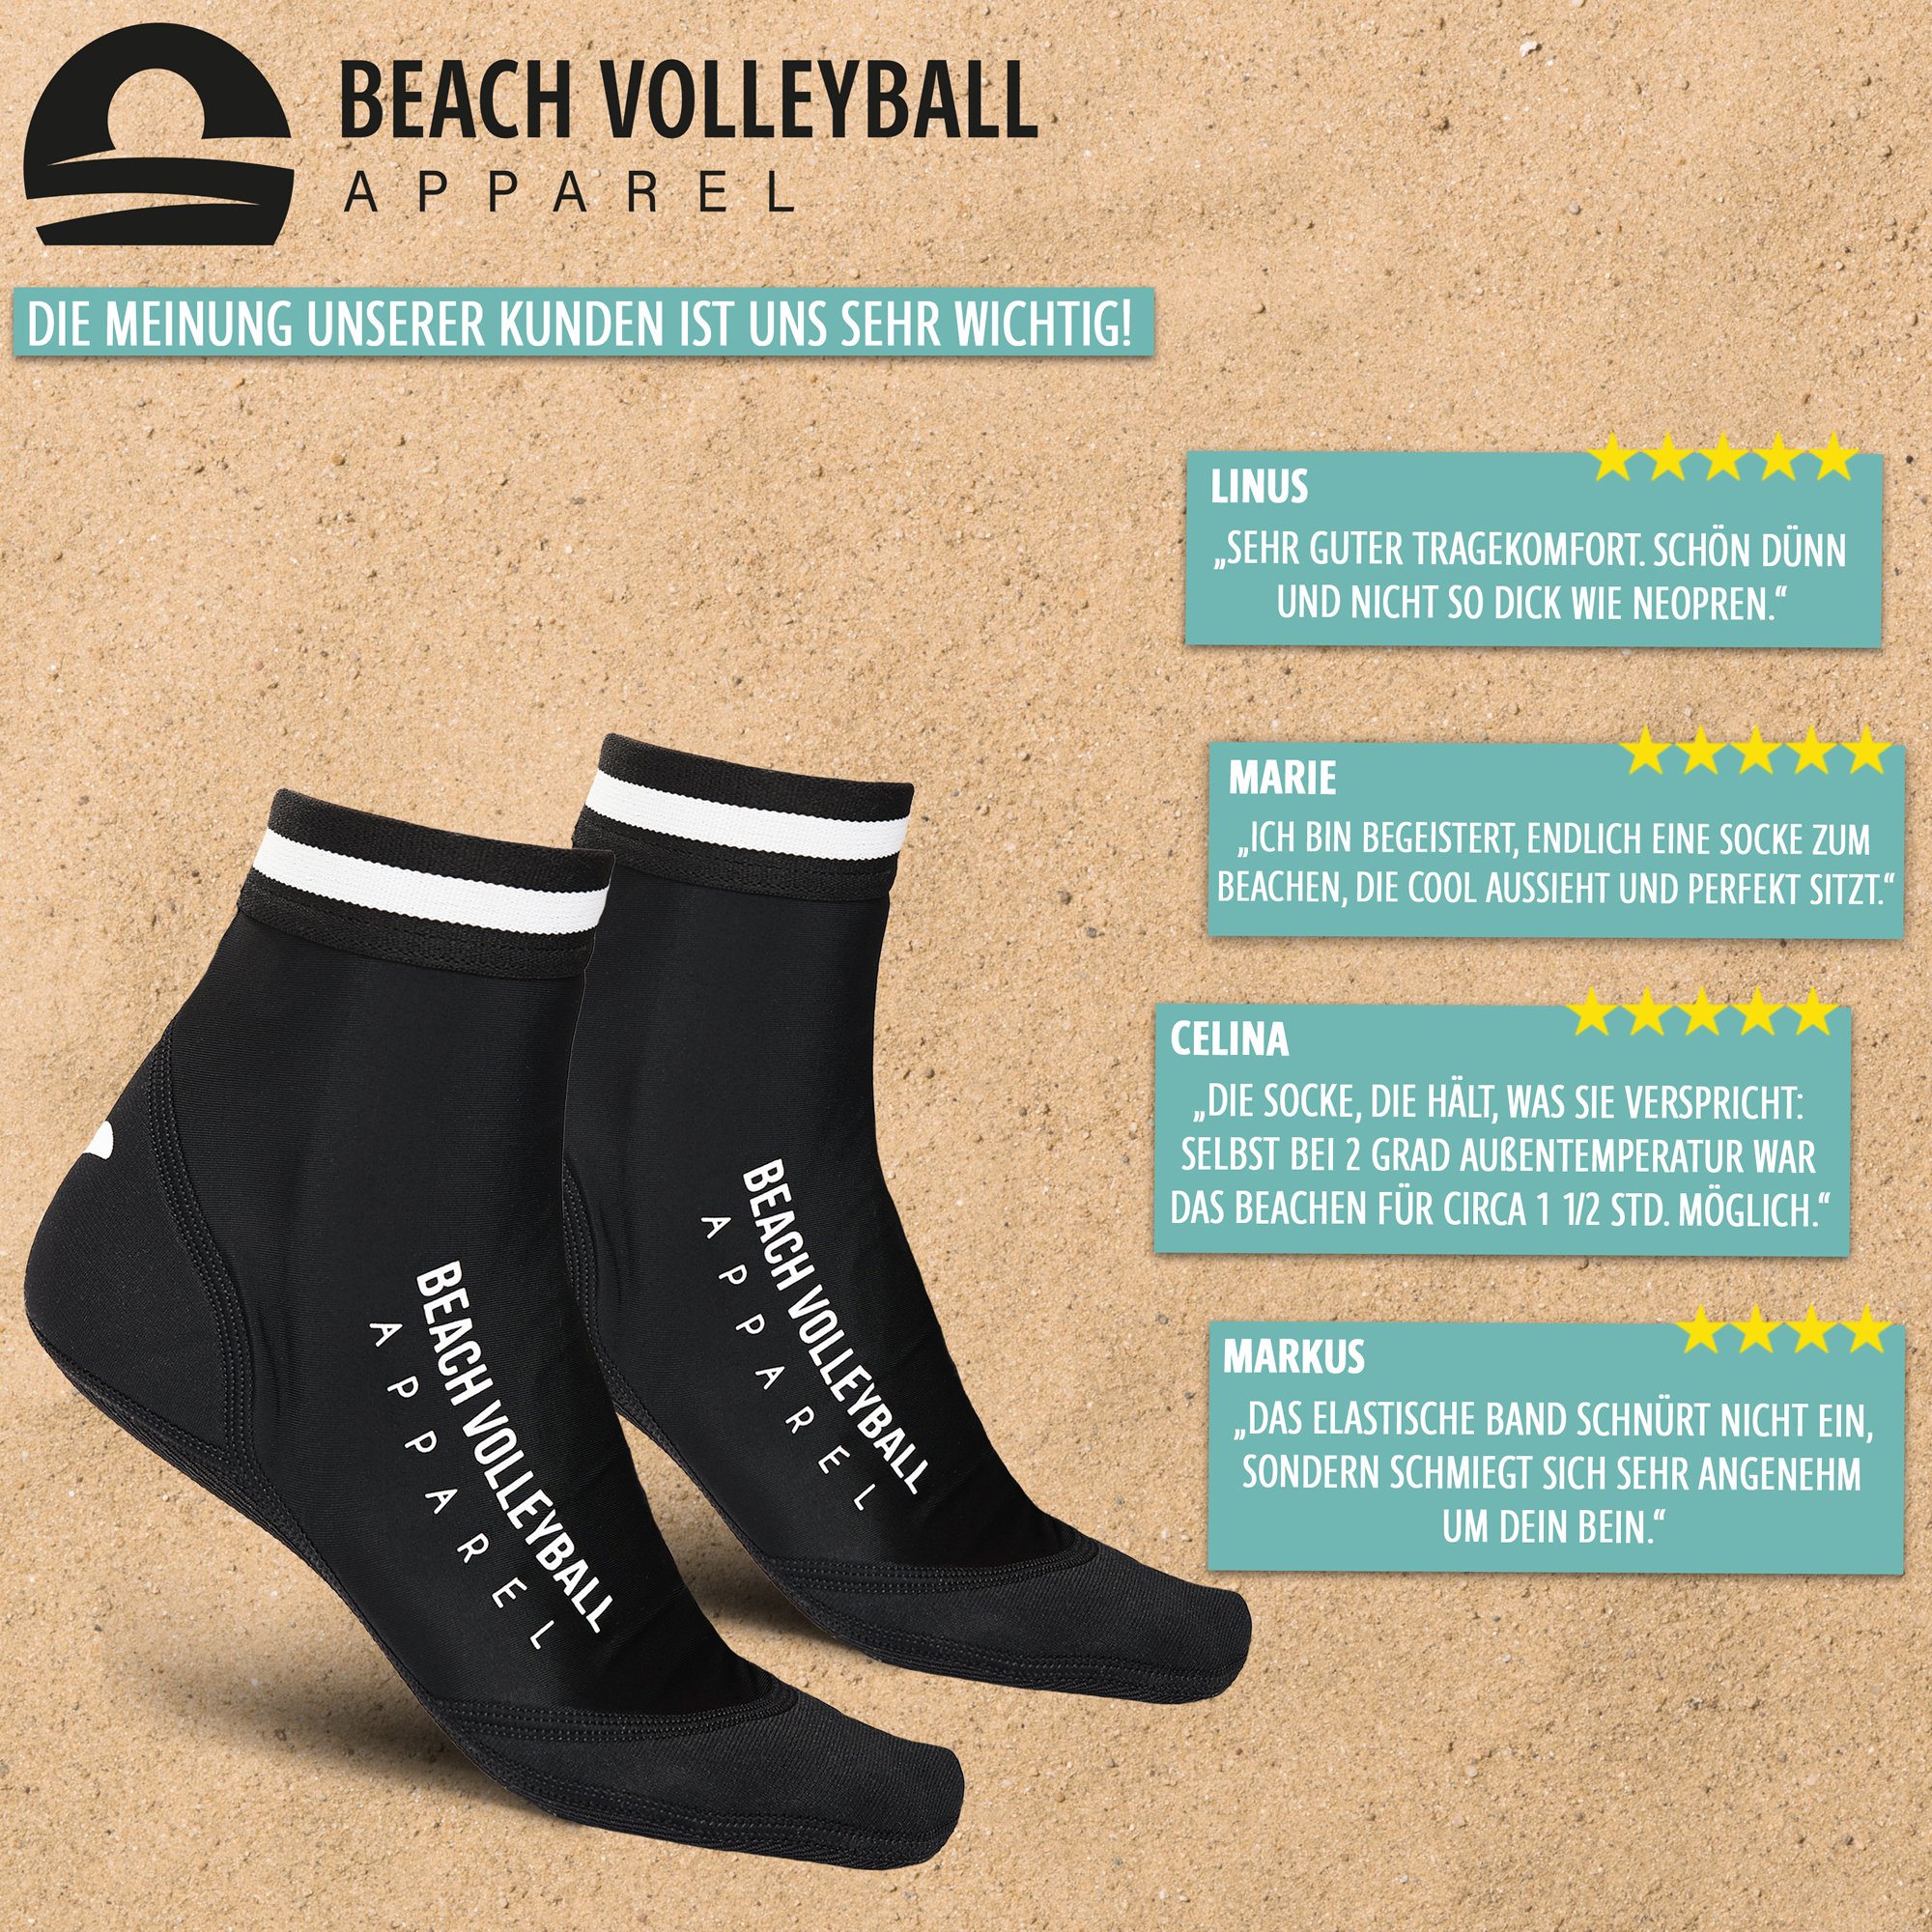 Beach Volleyball Apparel Beachsocken